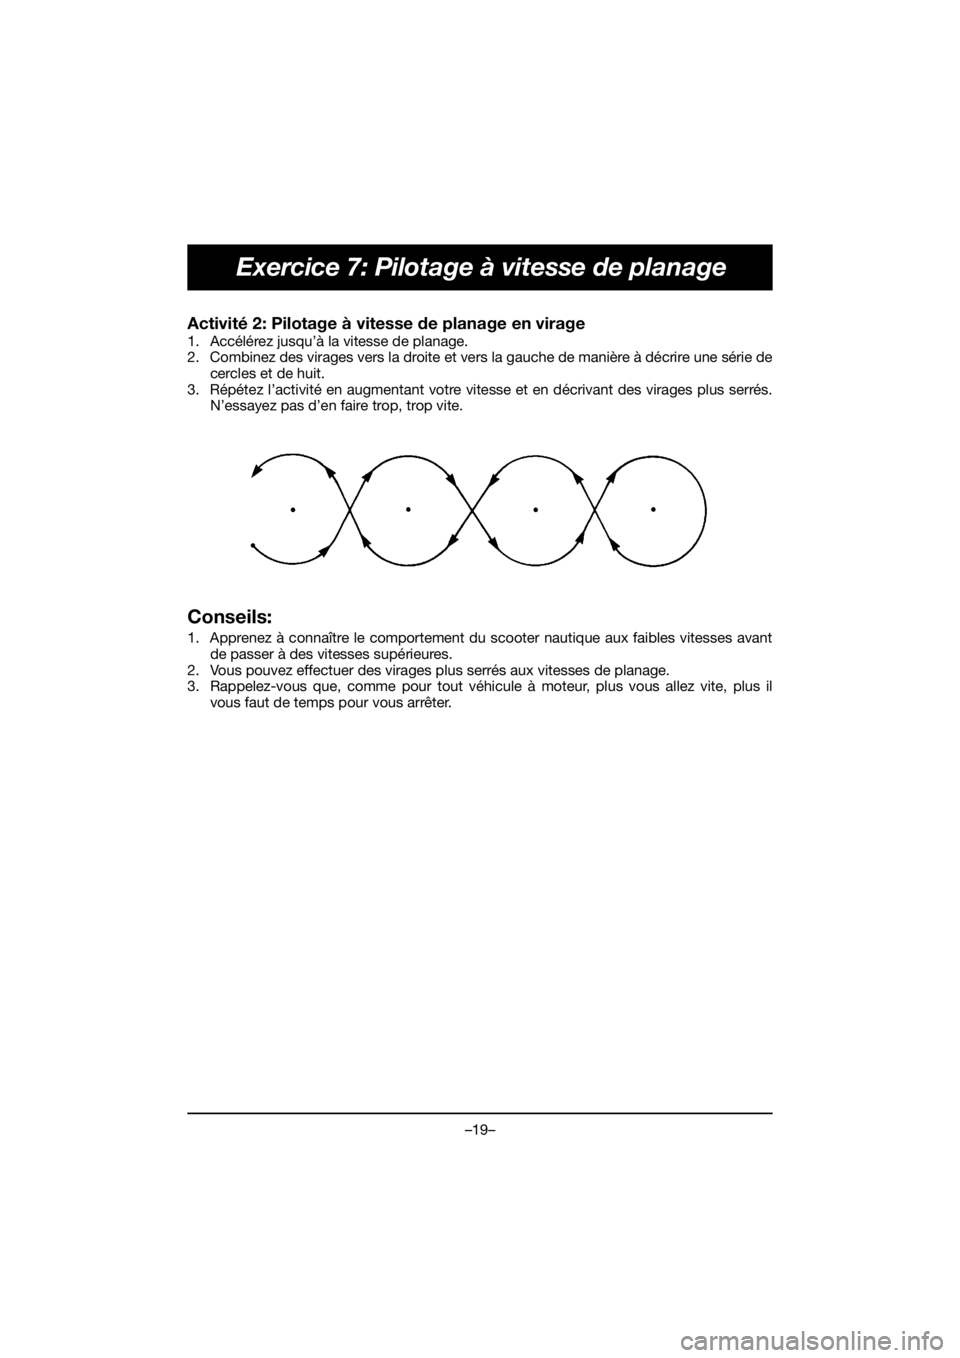 YAMAHA EXR 2020  Notices Demploi (in French) –19–
Exercice 7: Pilotage à vitesse de planage
Activité 2: Pilotage à vitesse de planage en virage 
1. Accélérez jusqu’à la vitesse de planage. 
2. Combinez des virages vers la droite et v